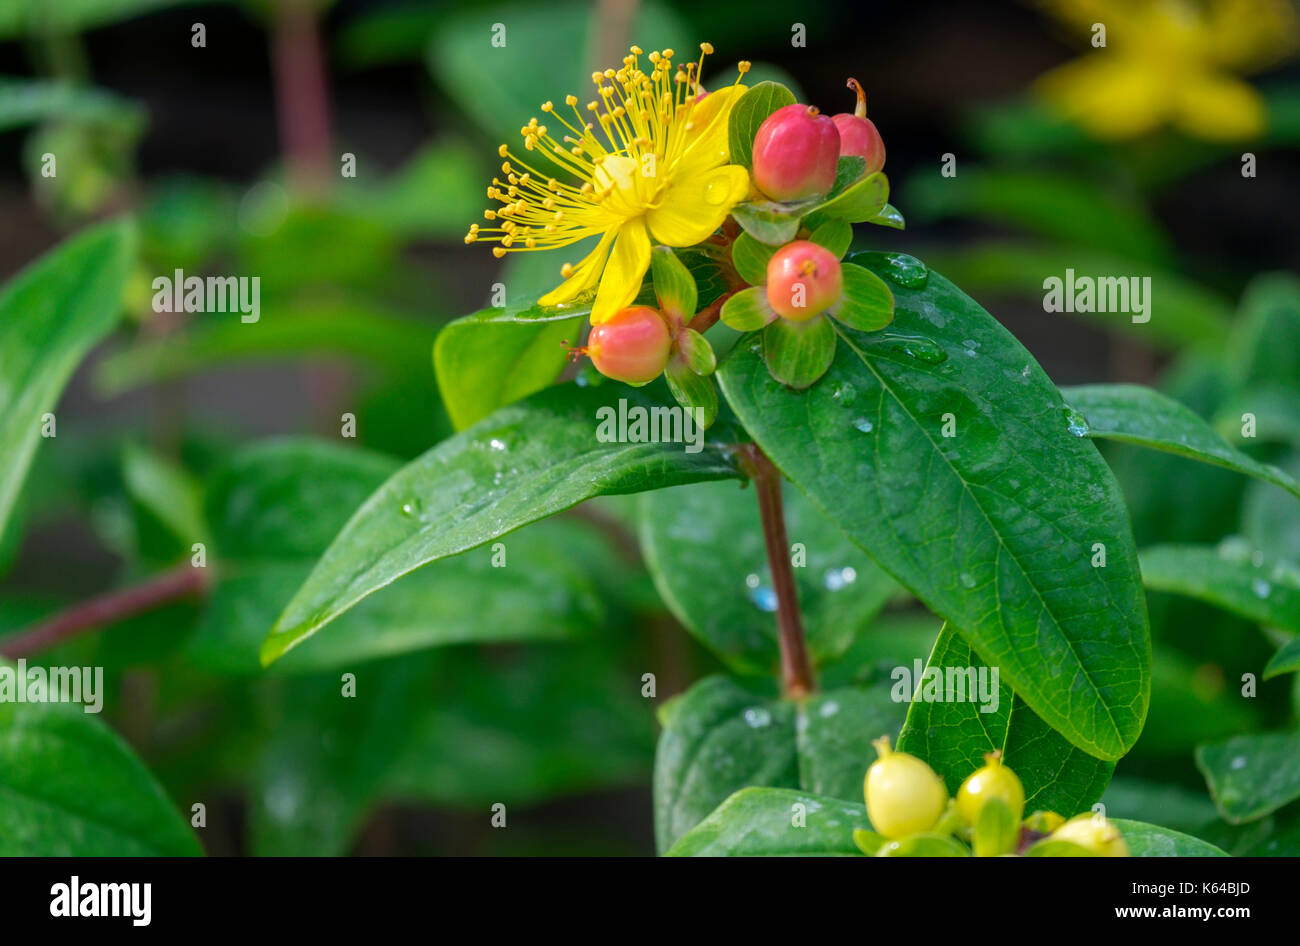 St. John's Wort (Hypericum inodorum), Blossom and Fruits, Germany Stock Photo